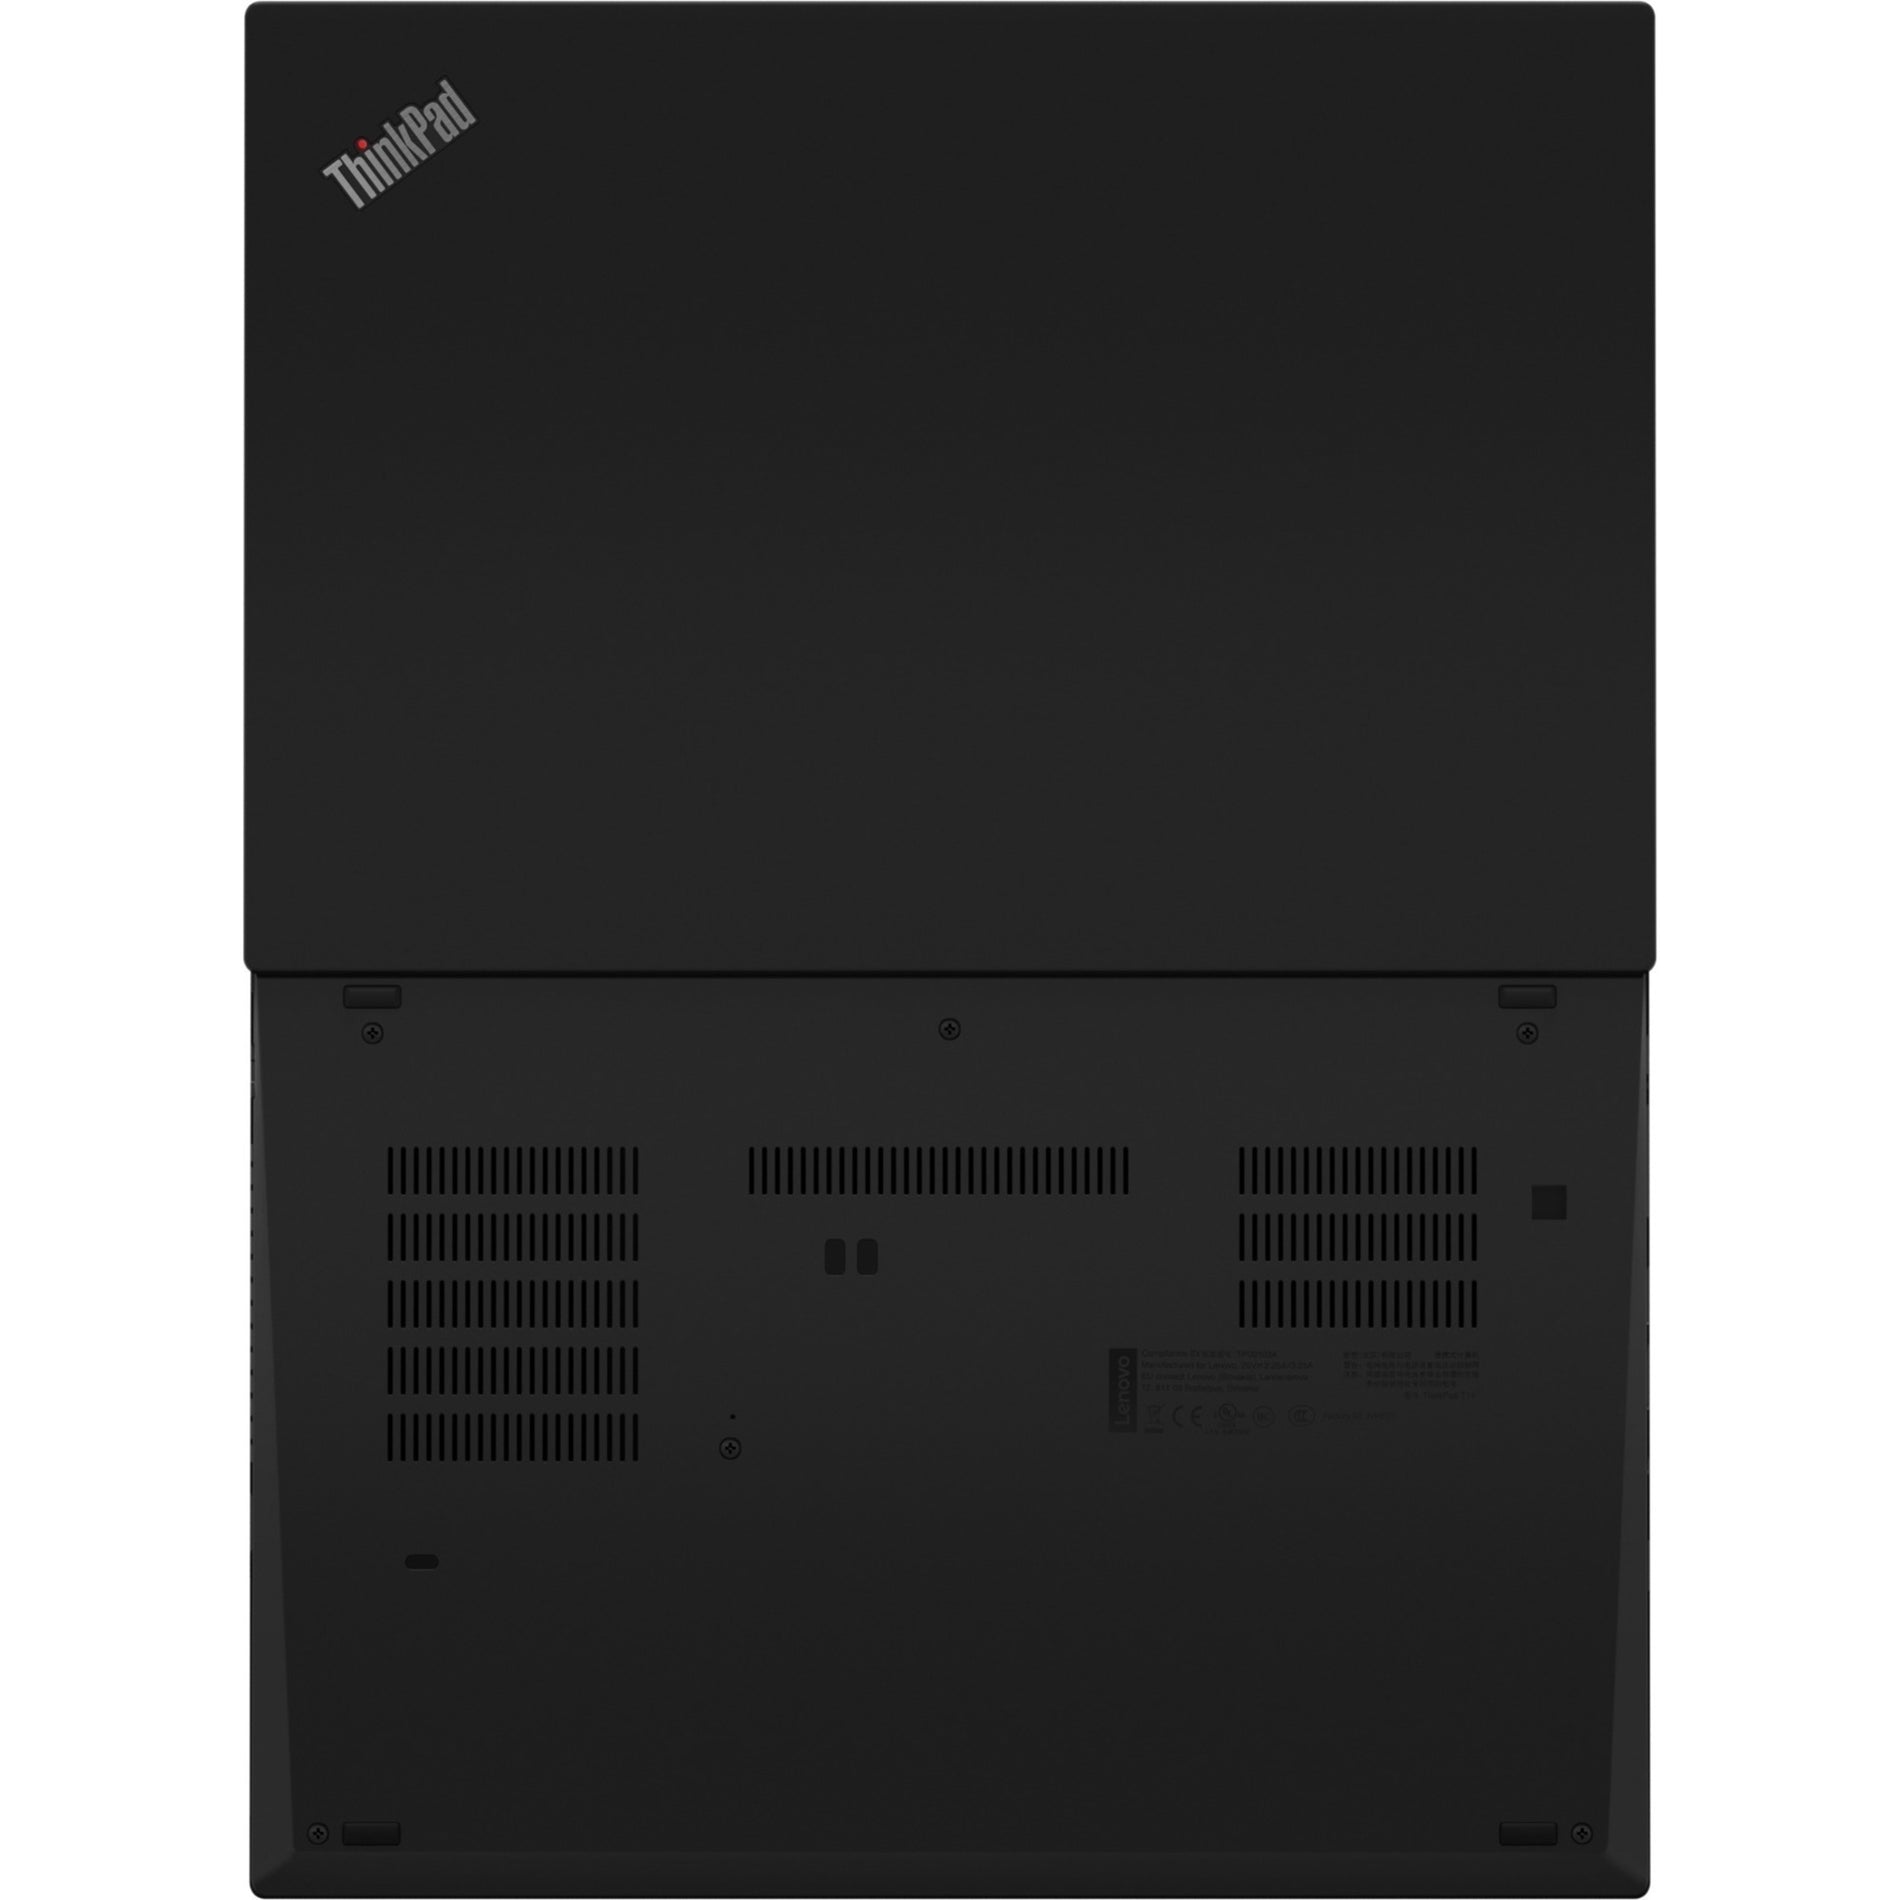 Lenovo 20W000T3US ThinkPad T14 Gen2, 14" Full HD, Core i5, 8GB RAM, 256GB SSD, Windows 10 Pro